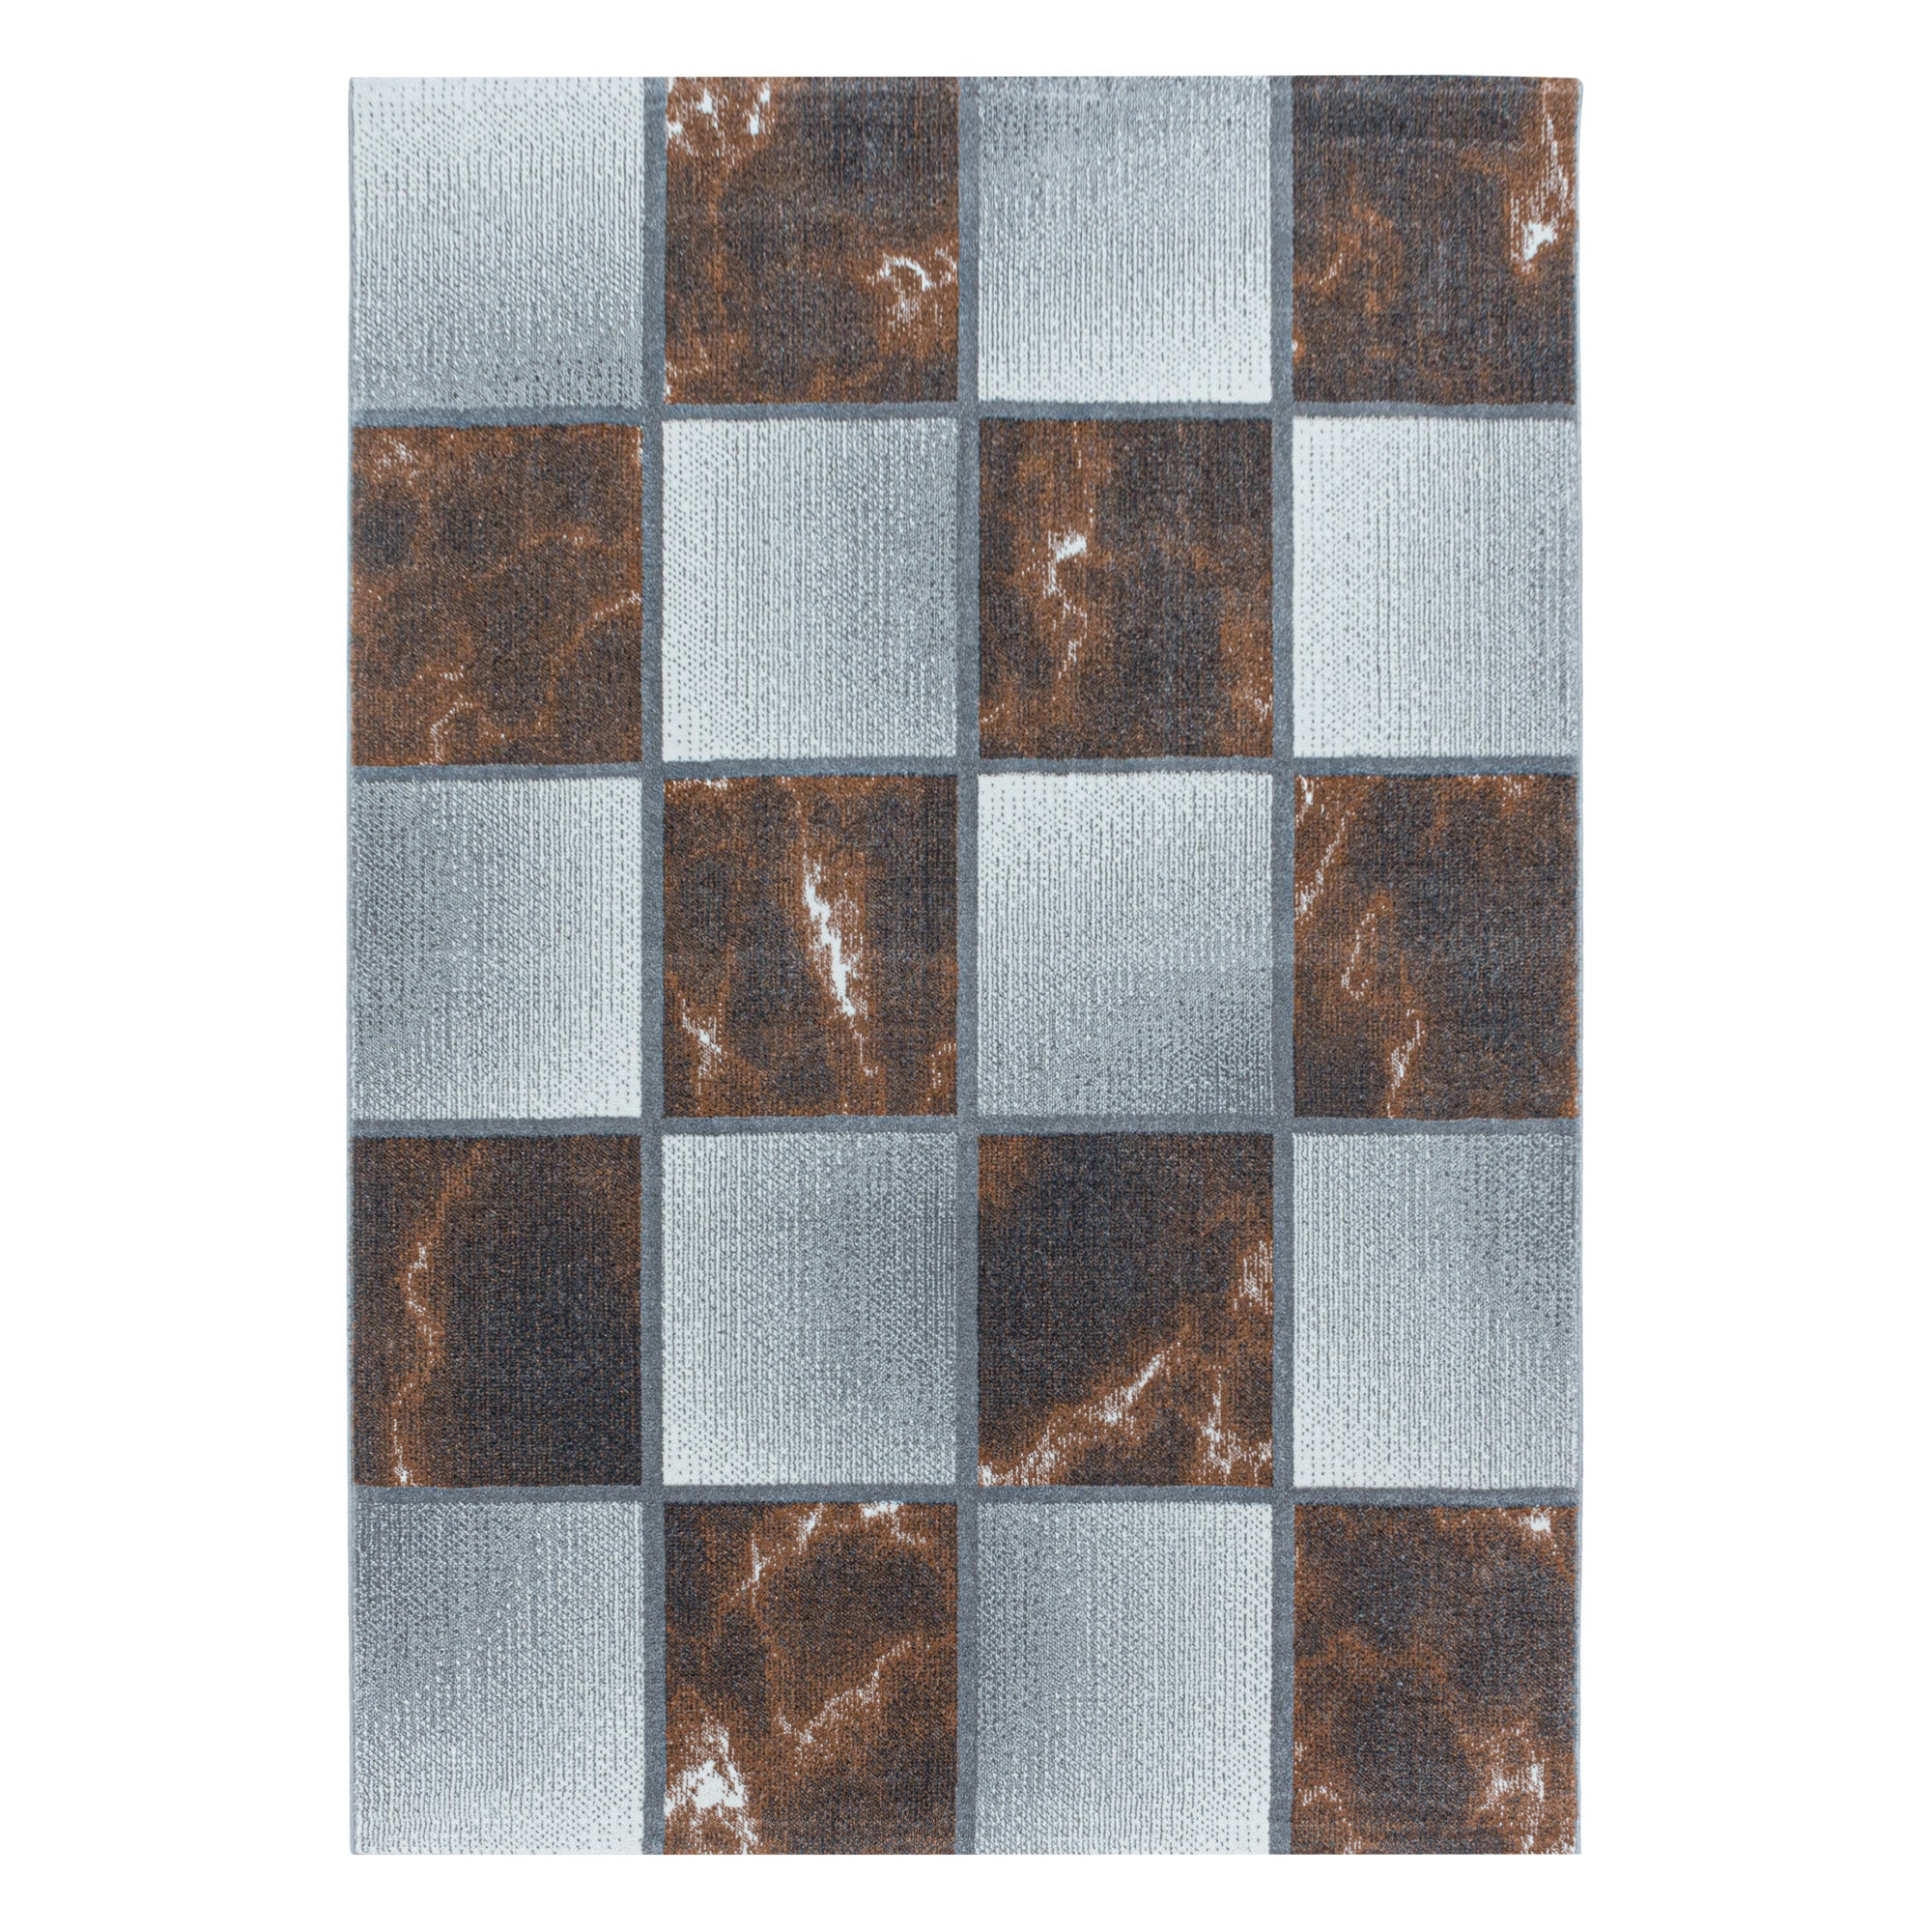 Kurzflor Teppich Farbe Terra Quadrat Muster Marmoriert Wohnzimmerteppich Weich